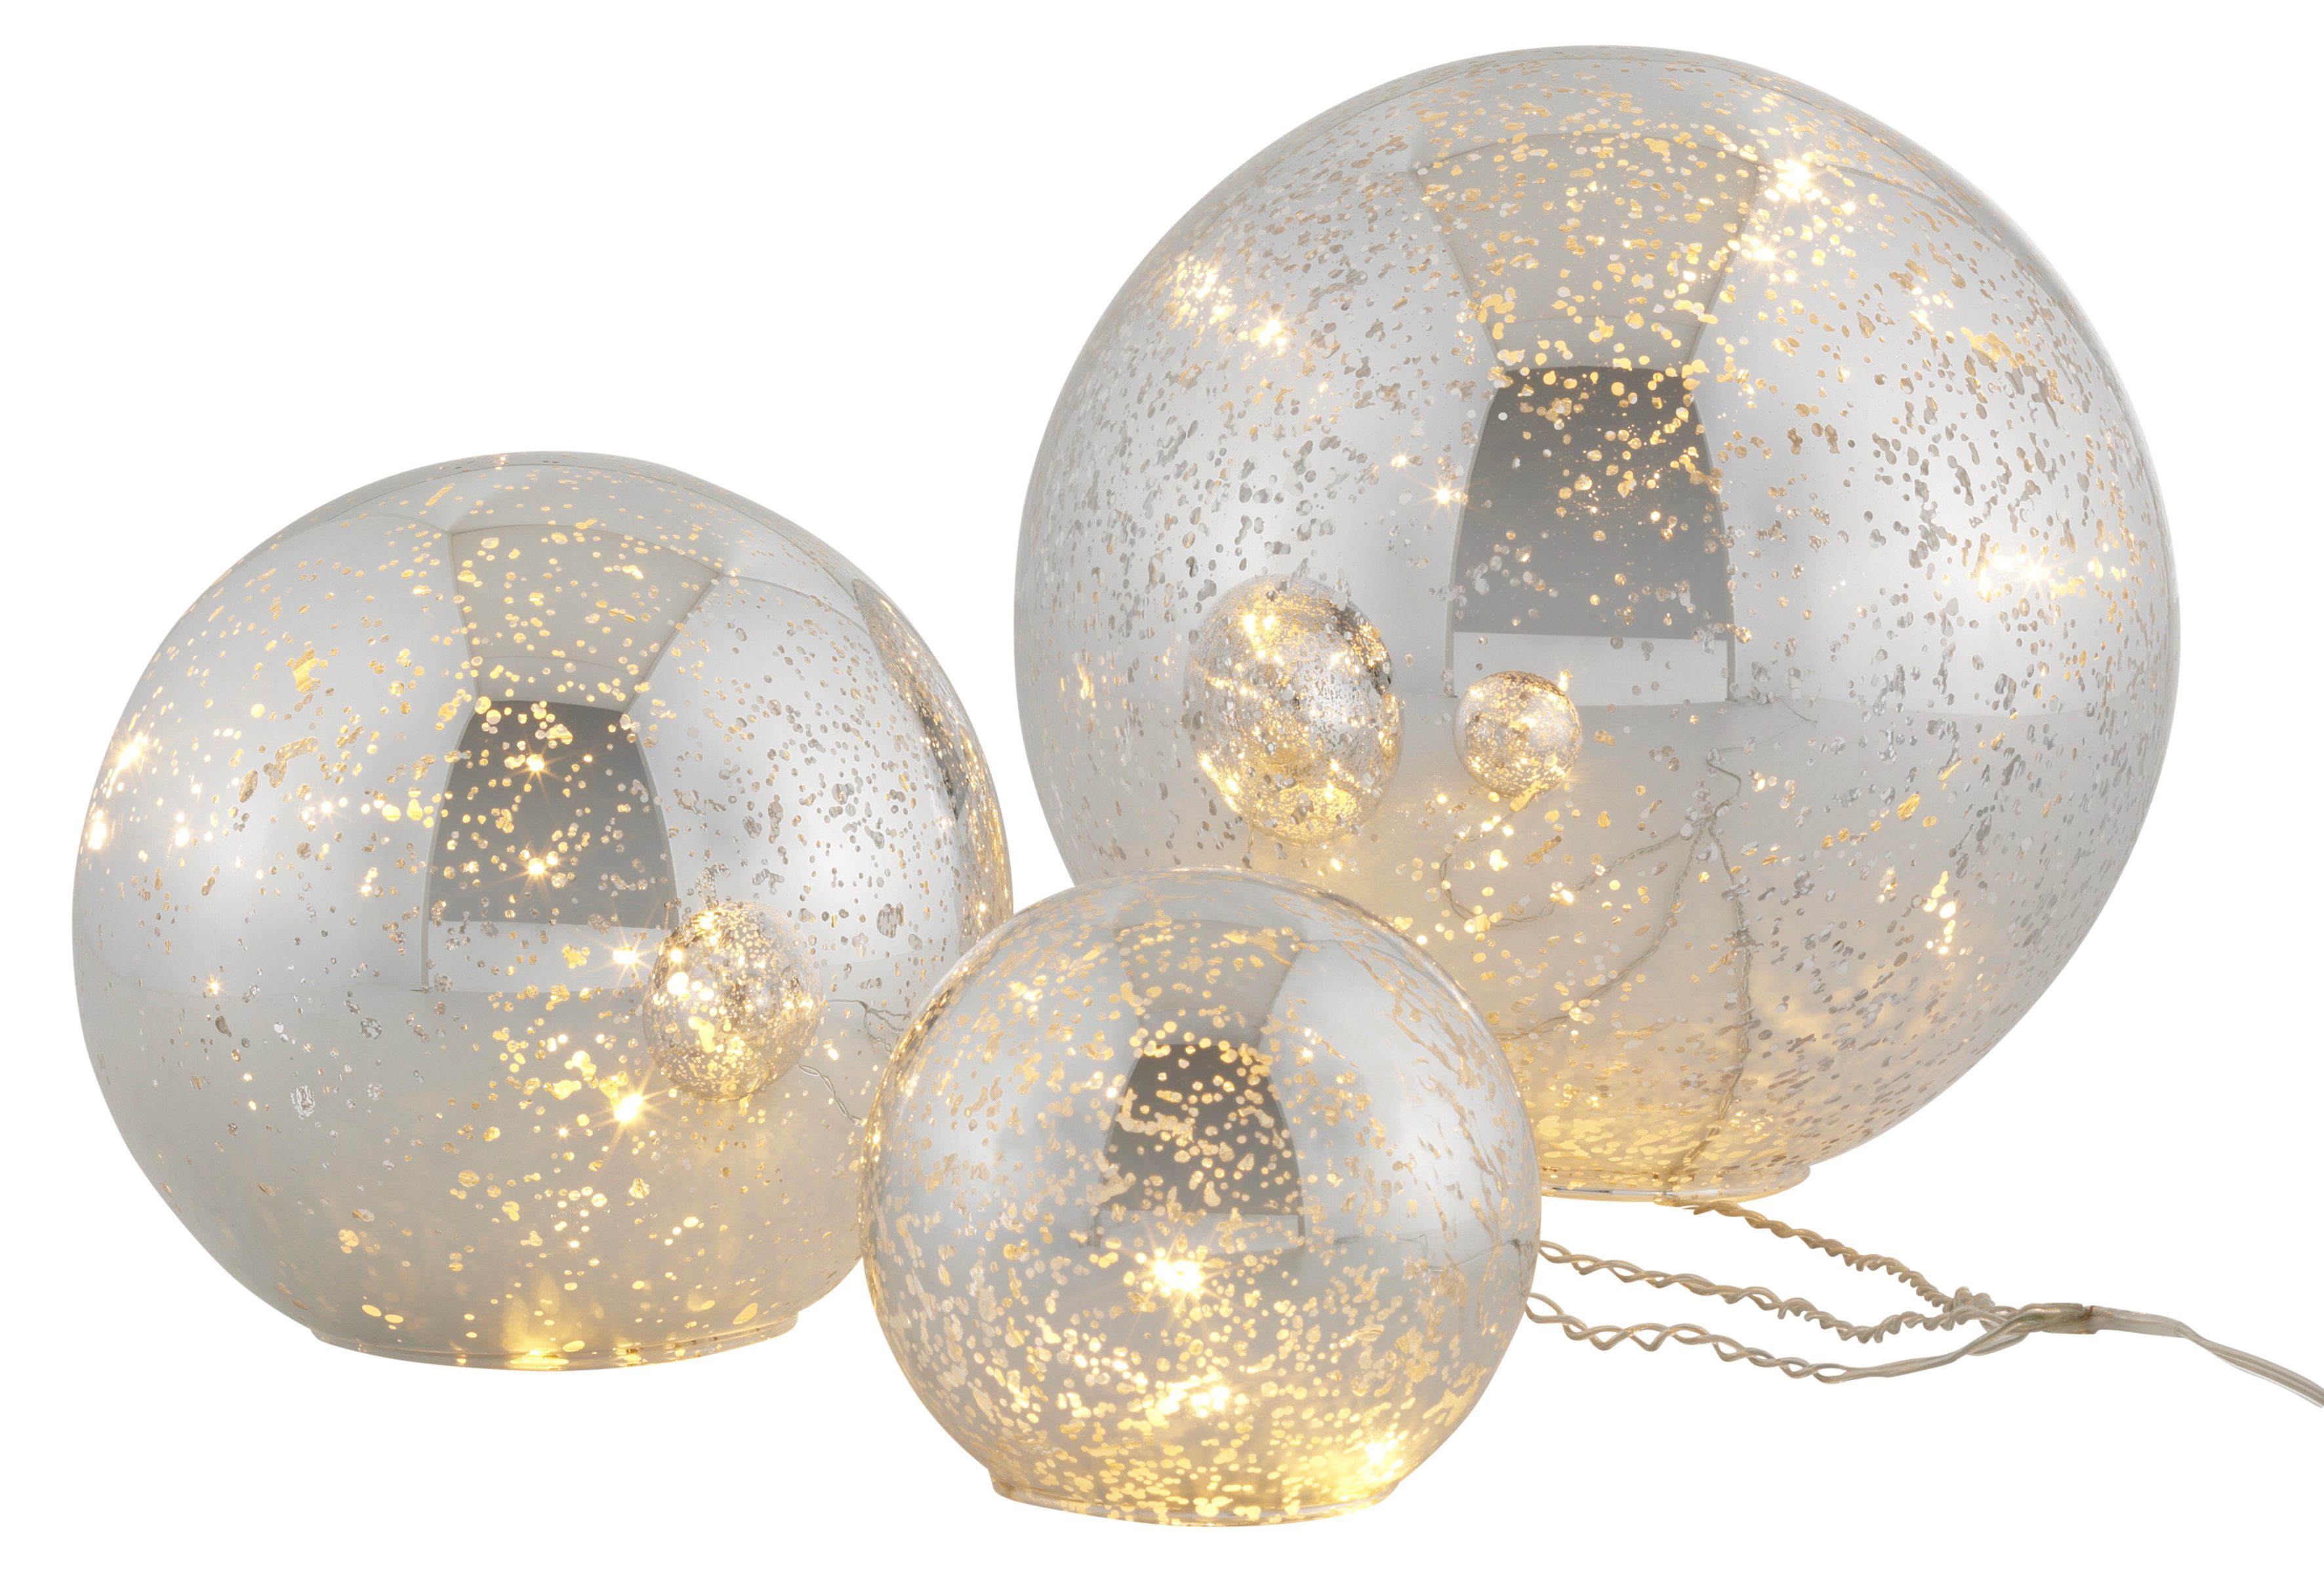 Home affaire Dekokugel Balls mit LED Beleuchtung, im 3-teiligen Set, bestehend aus Ø 10, 15, 20 cm